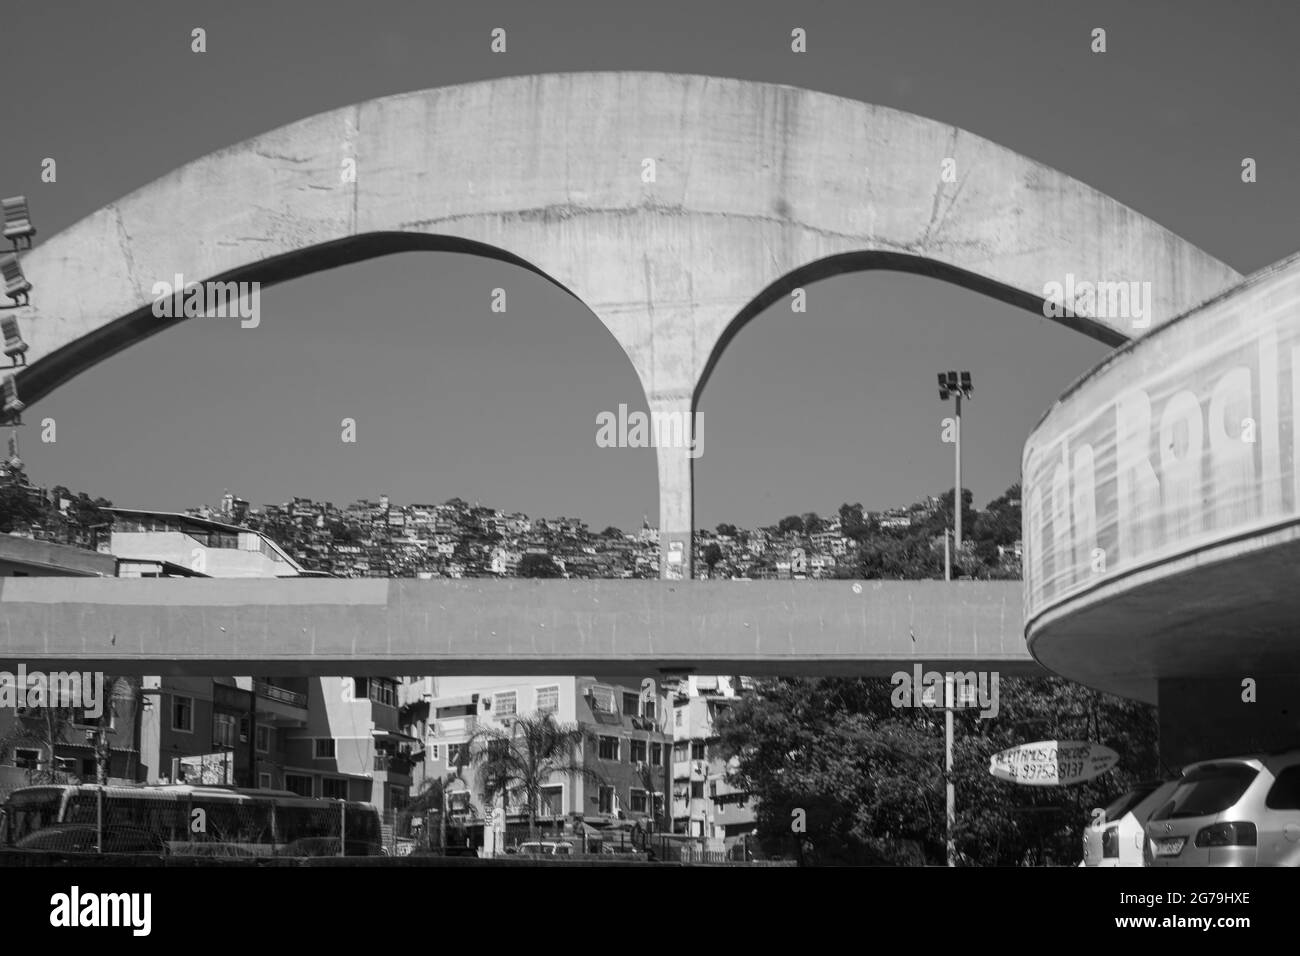 Die Fußgängerbrücke aus Stahlbeton zur Rocinha Favela im Hintergrund wurde vom brasilianischen Architekten Oscar Niemeyer entworfen. Stockfoto